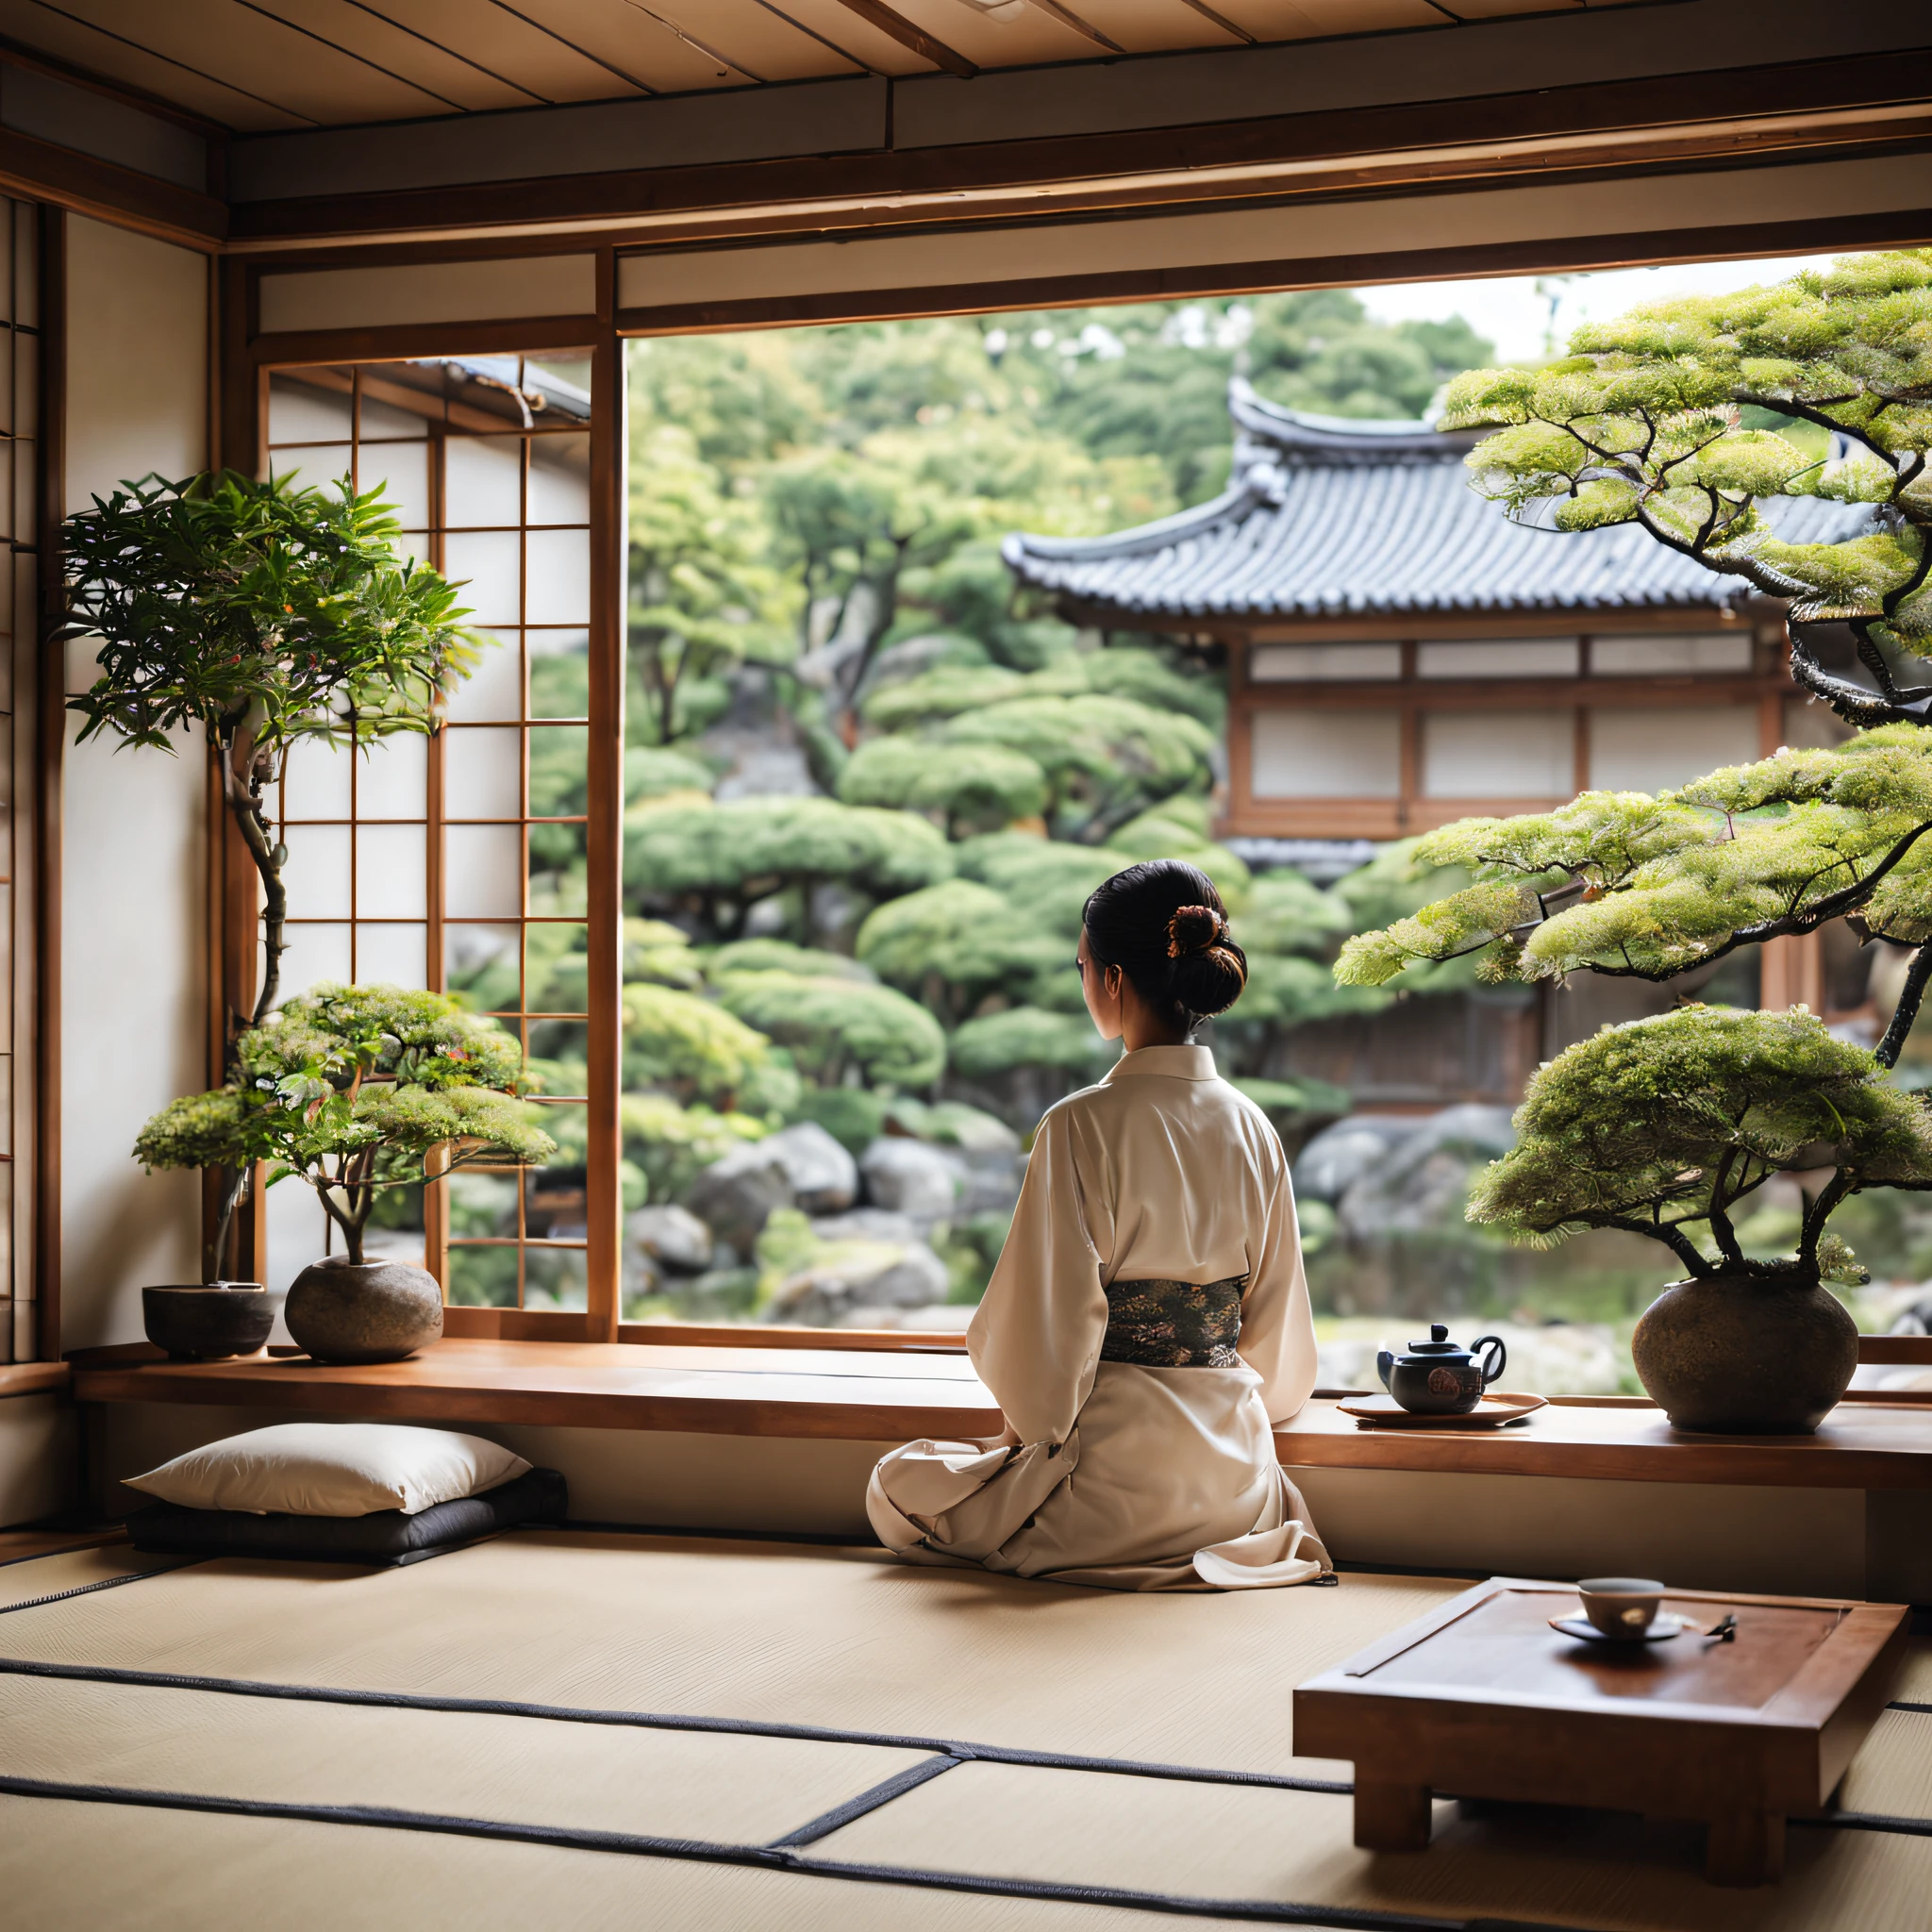 伝統的な日本庭園を望むリビングルーム, お茶の時間, 景色を楽しむ女性, 小さな笑顔, 屋内のいくつかの植物, 居心地の良い家, 朝, 禅スタイル, 木製の内装, 写実的な